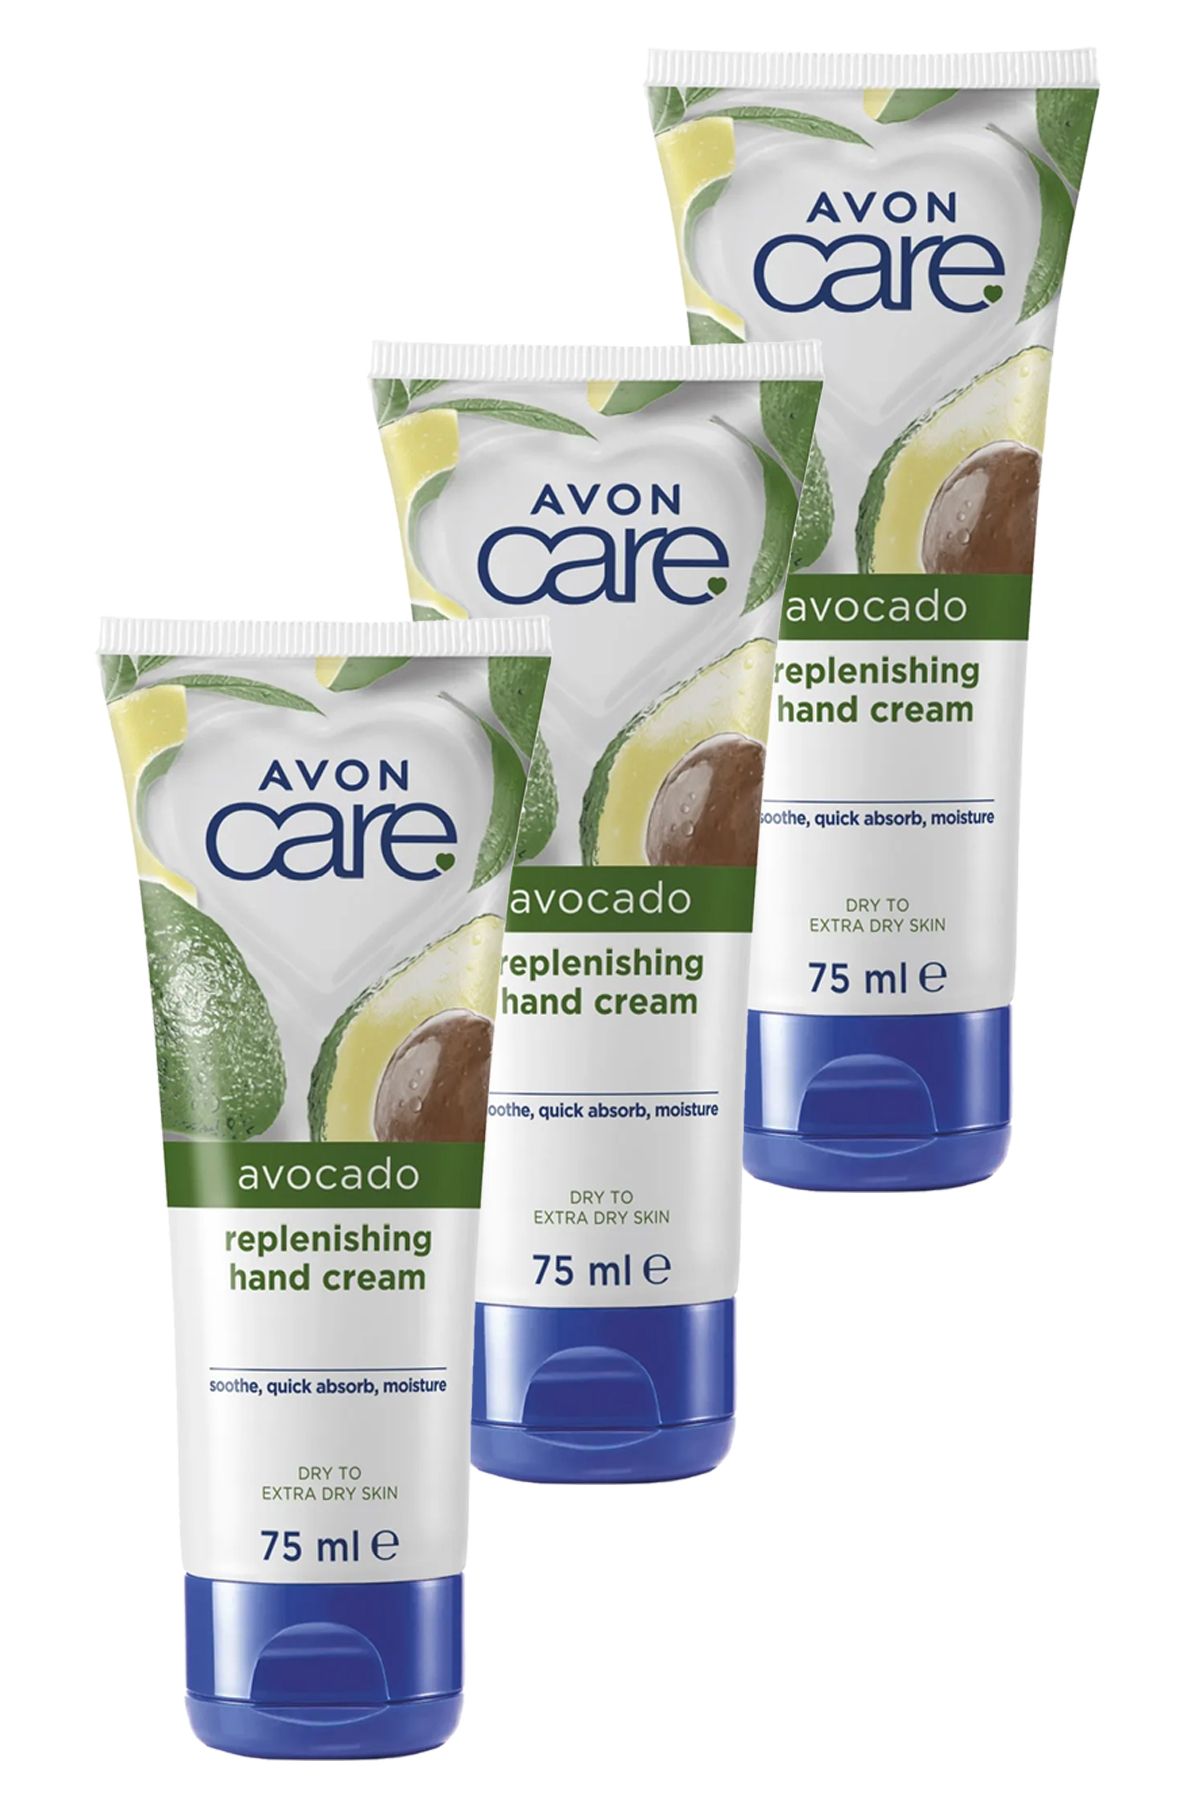 Avon Care Kuru Ciltler İçin Avokado Özlü El Krem 75 Ml. Üçlü Set